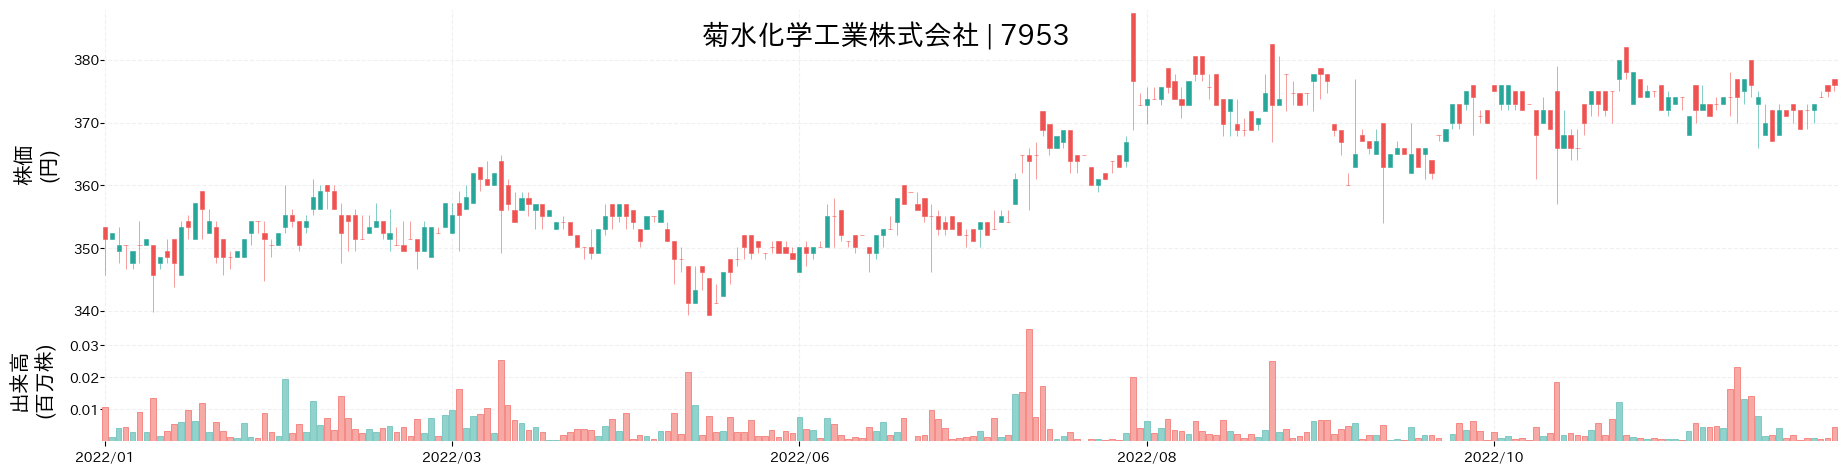 菊水化学工業の株価推移(2022)